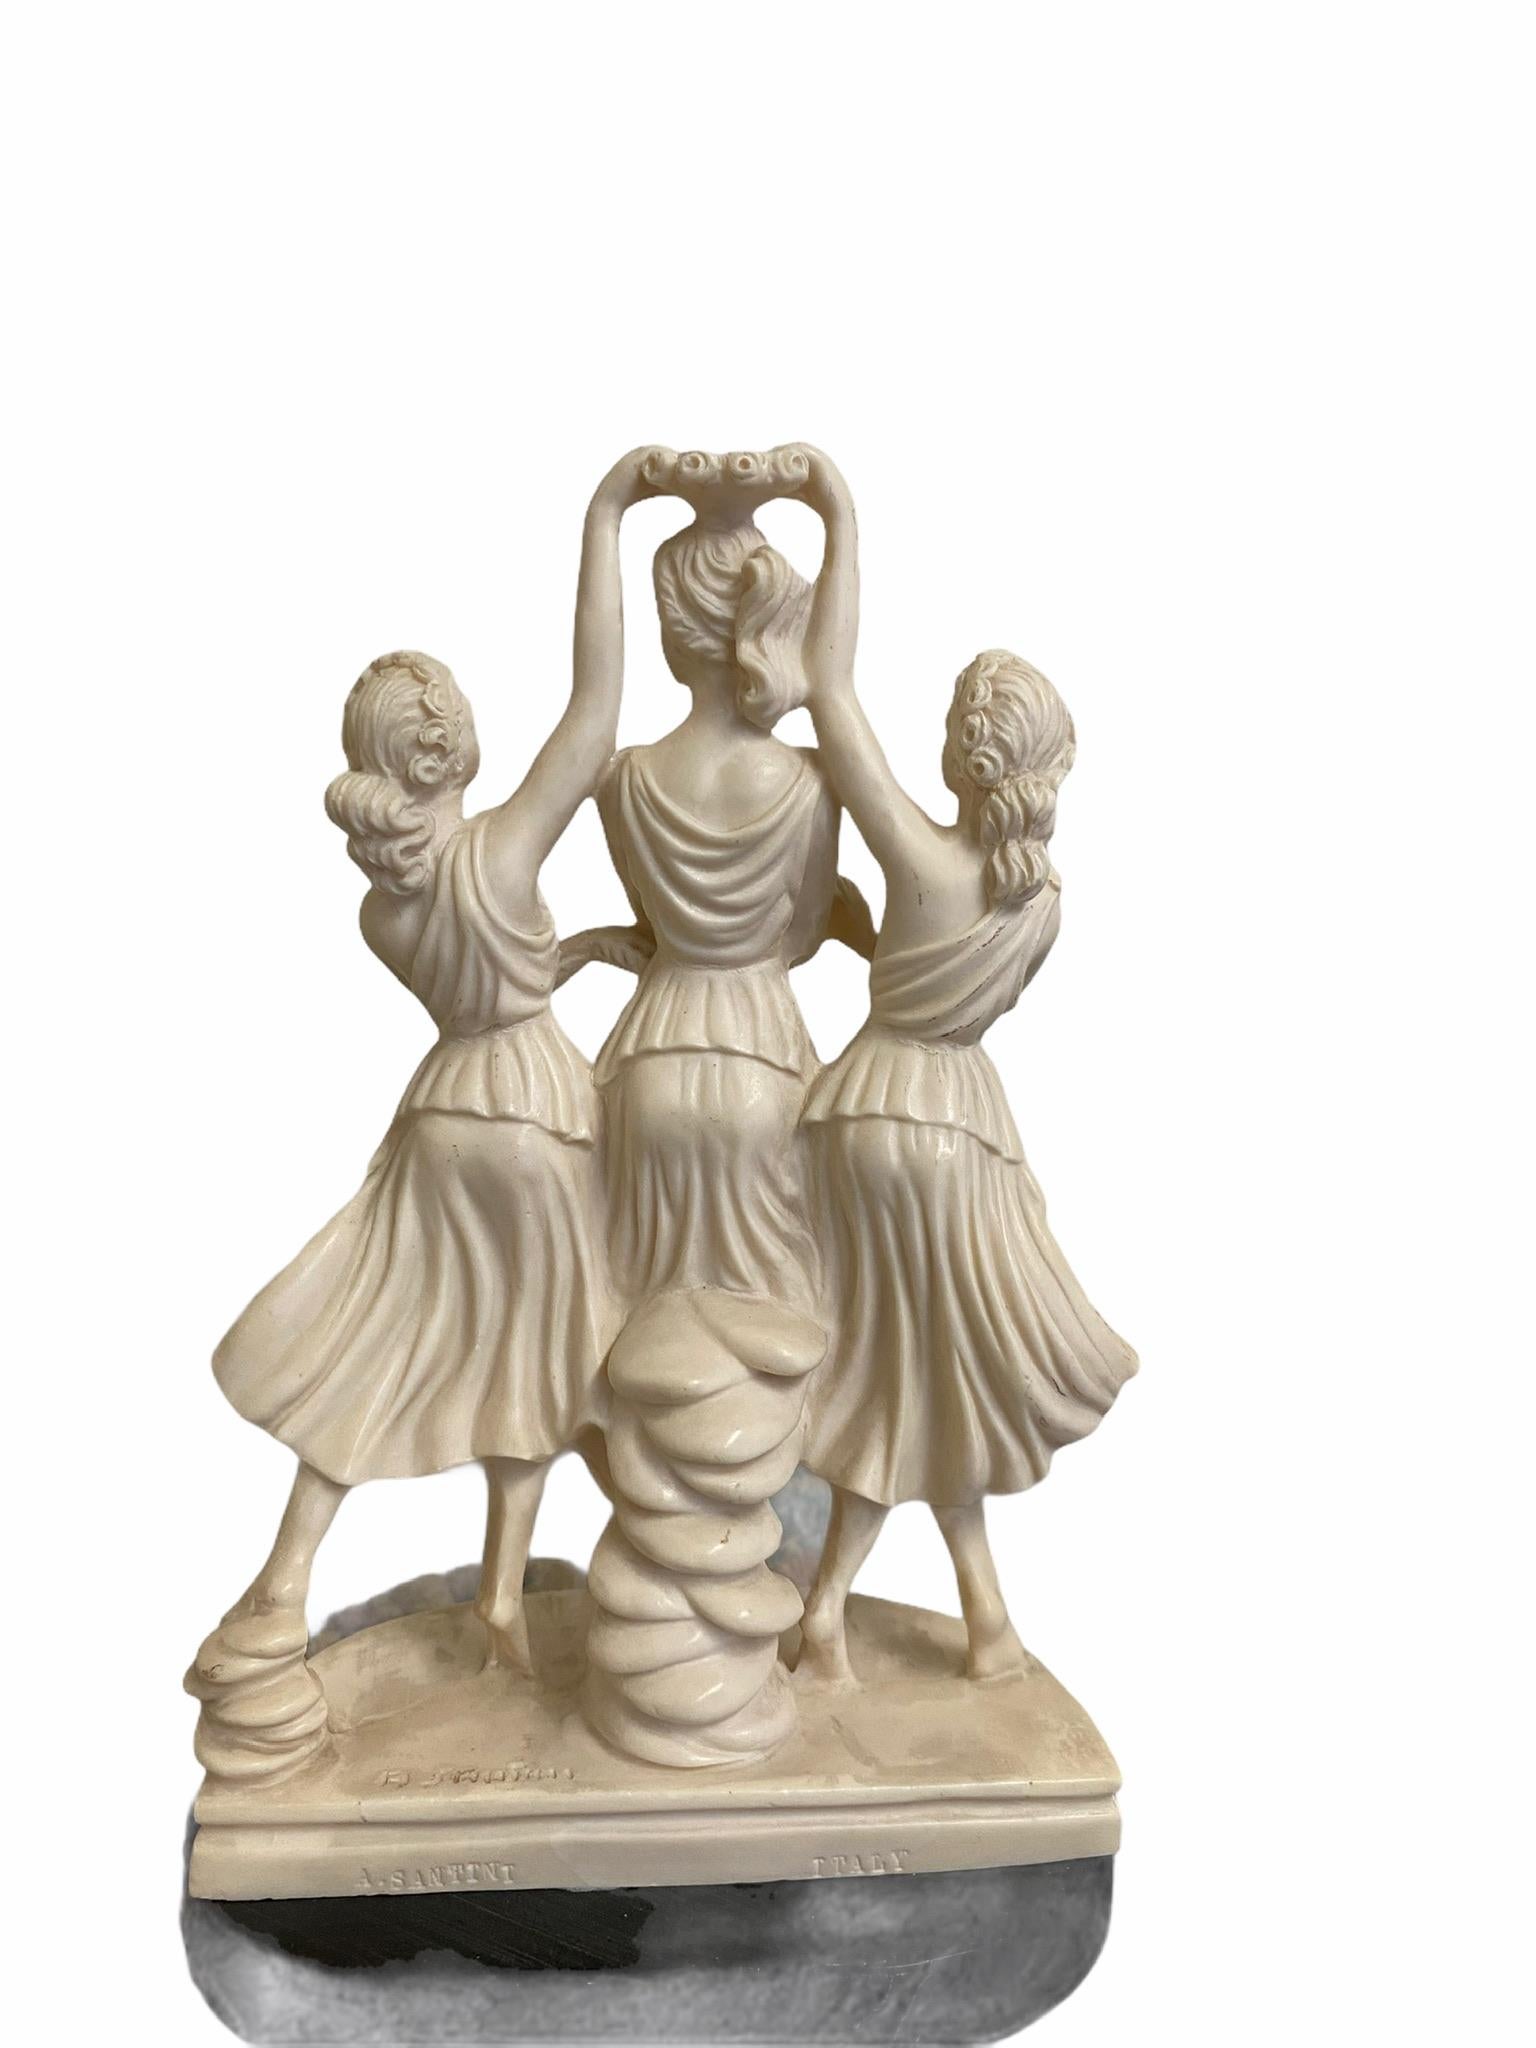 La belle sculpture vintage des Trois Grâces dansantes est en excellent état, sans entailles ni bosses. Cette pièce est fabriquée à la main en Italie et est estampillée.